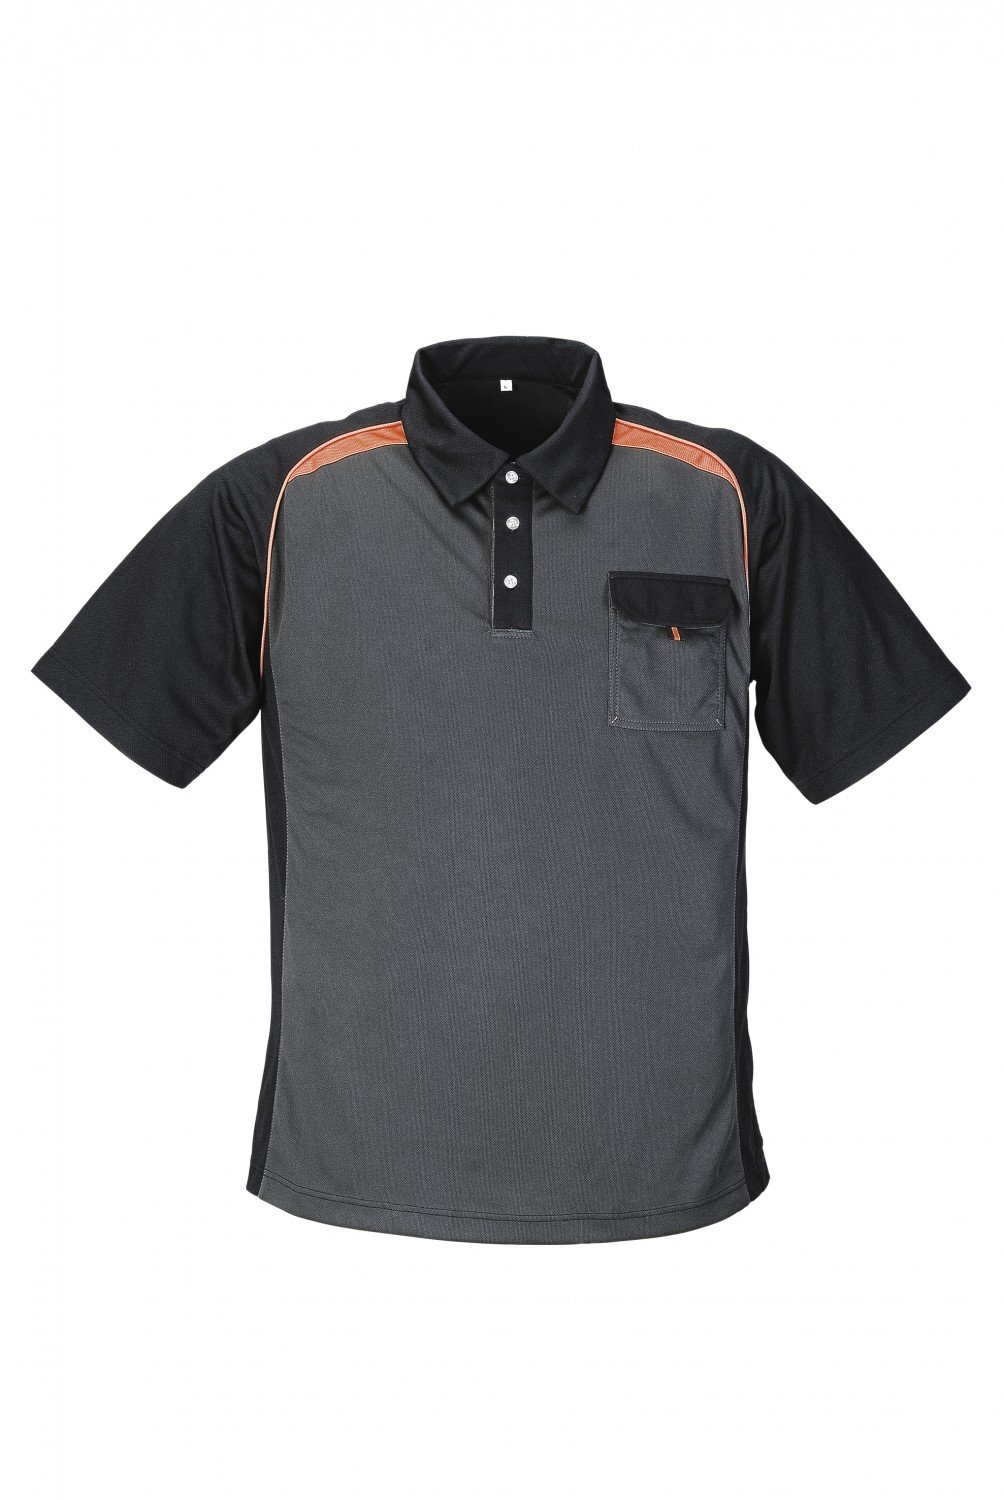 Terratrend JOB Polo-Shirt, Farbe grau/schwarz/orange, Gr��e L